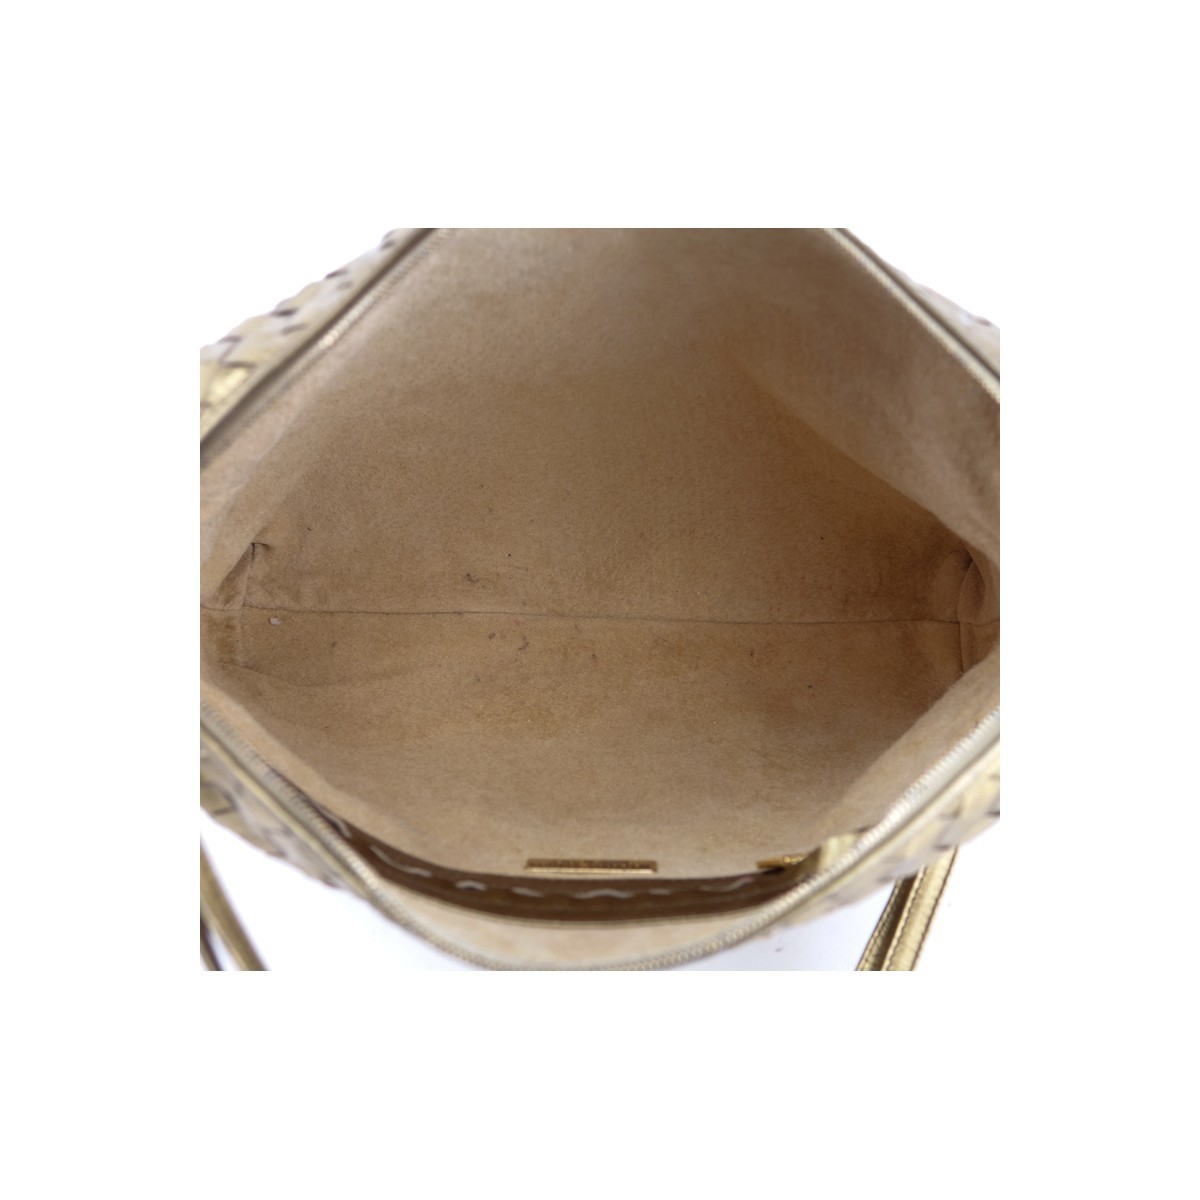 Bottega Veneta Gold Woven Shoulder Bag. Gold tone hardware, beige suede interior with zippered pocket.